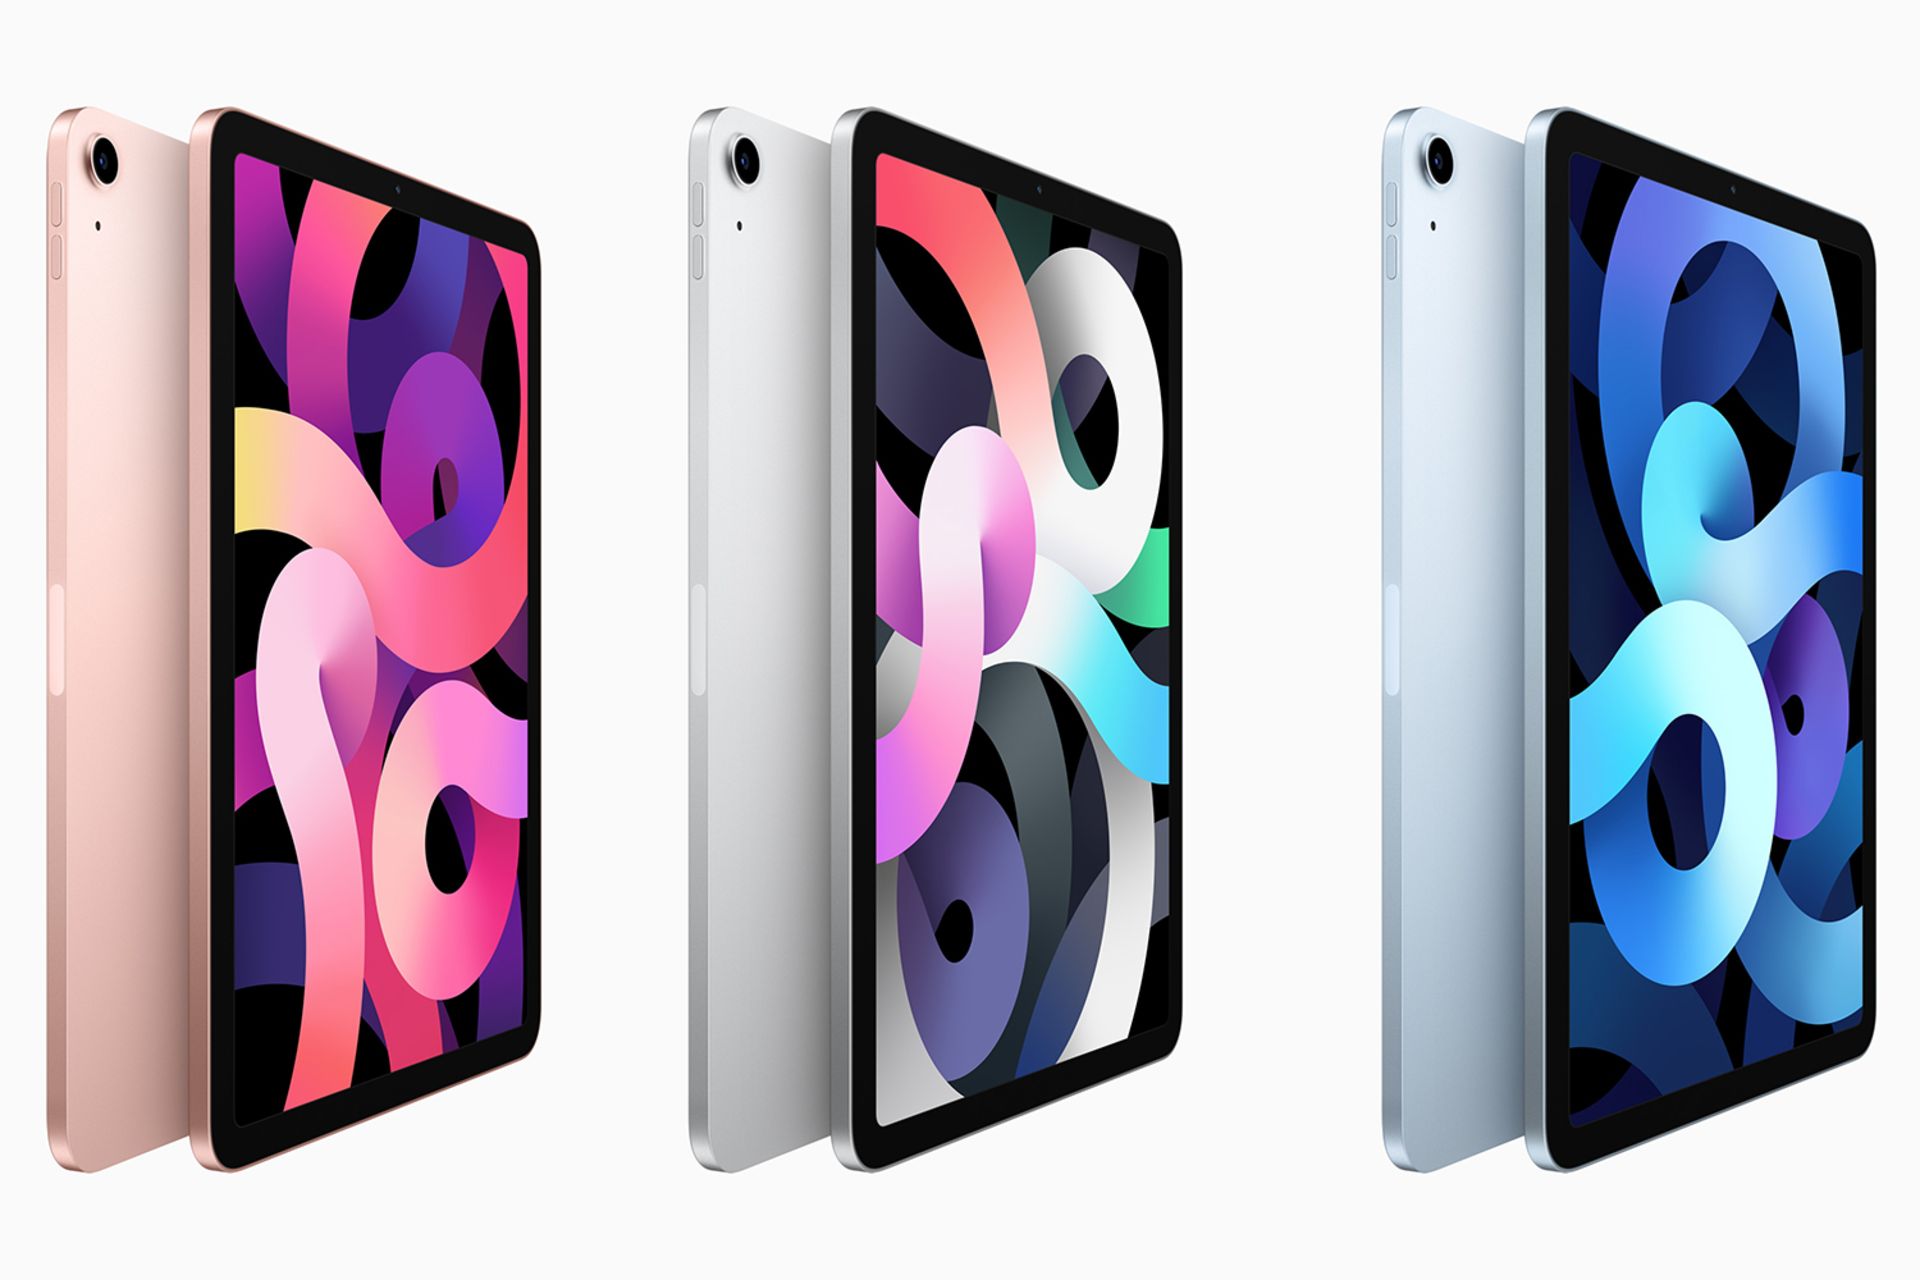 مرجع متخصصين ايران سه مدل آيپد اير 2020 / iPad Air از نيم رخ با سه رنگ